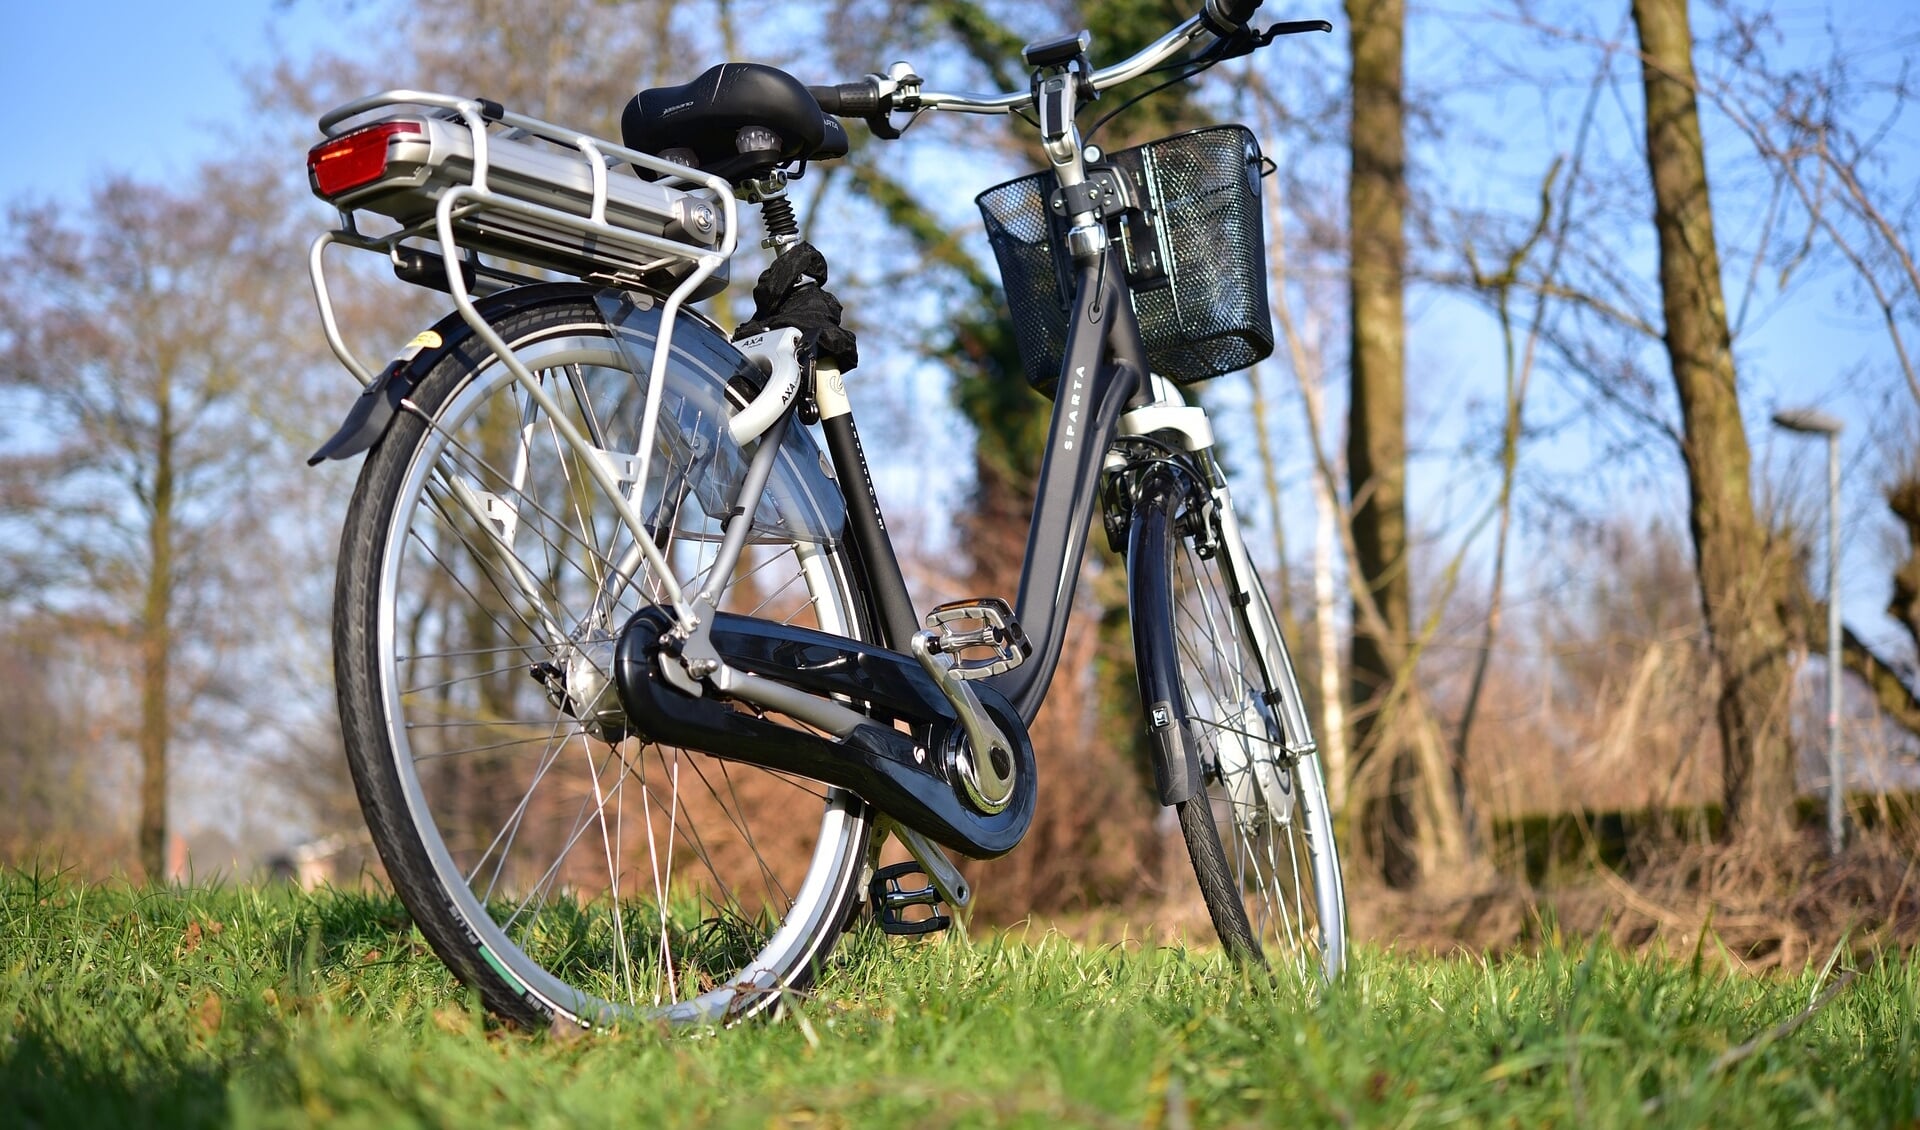 niettemin fort Telemacos Elektrische fiets ook in de schuur lang niet altijd veilig - EdeStad.nl  Nieuws uit de regio Ede